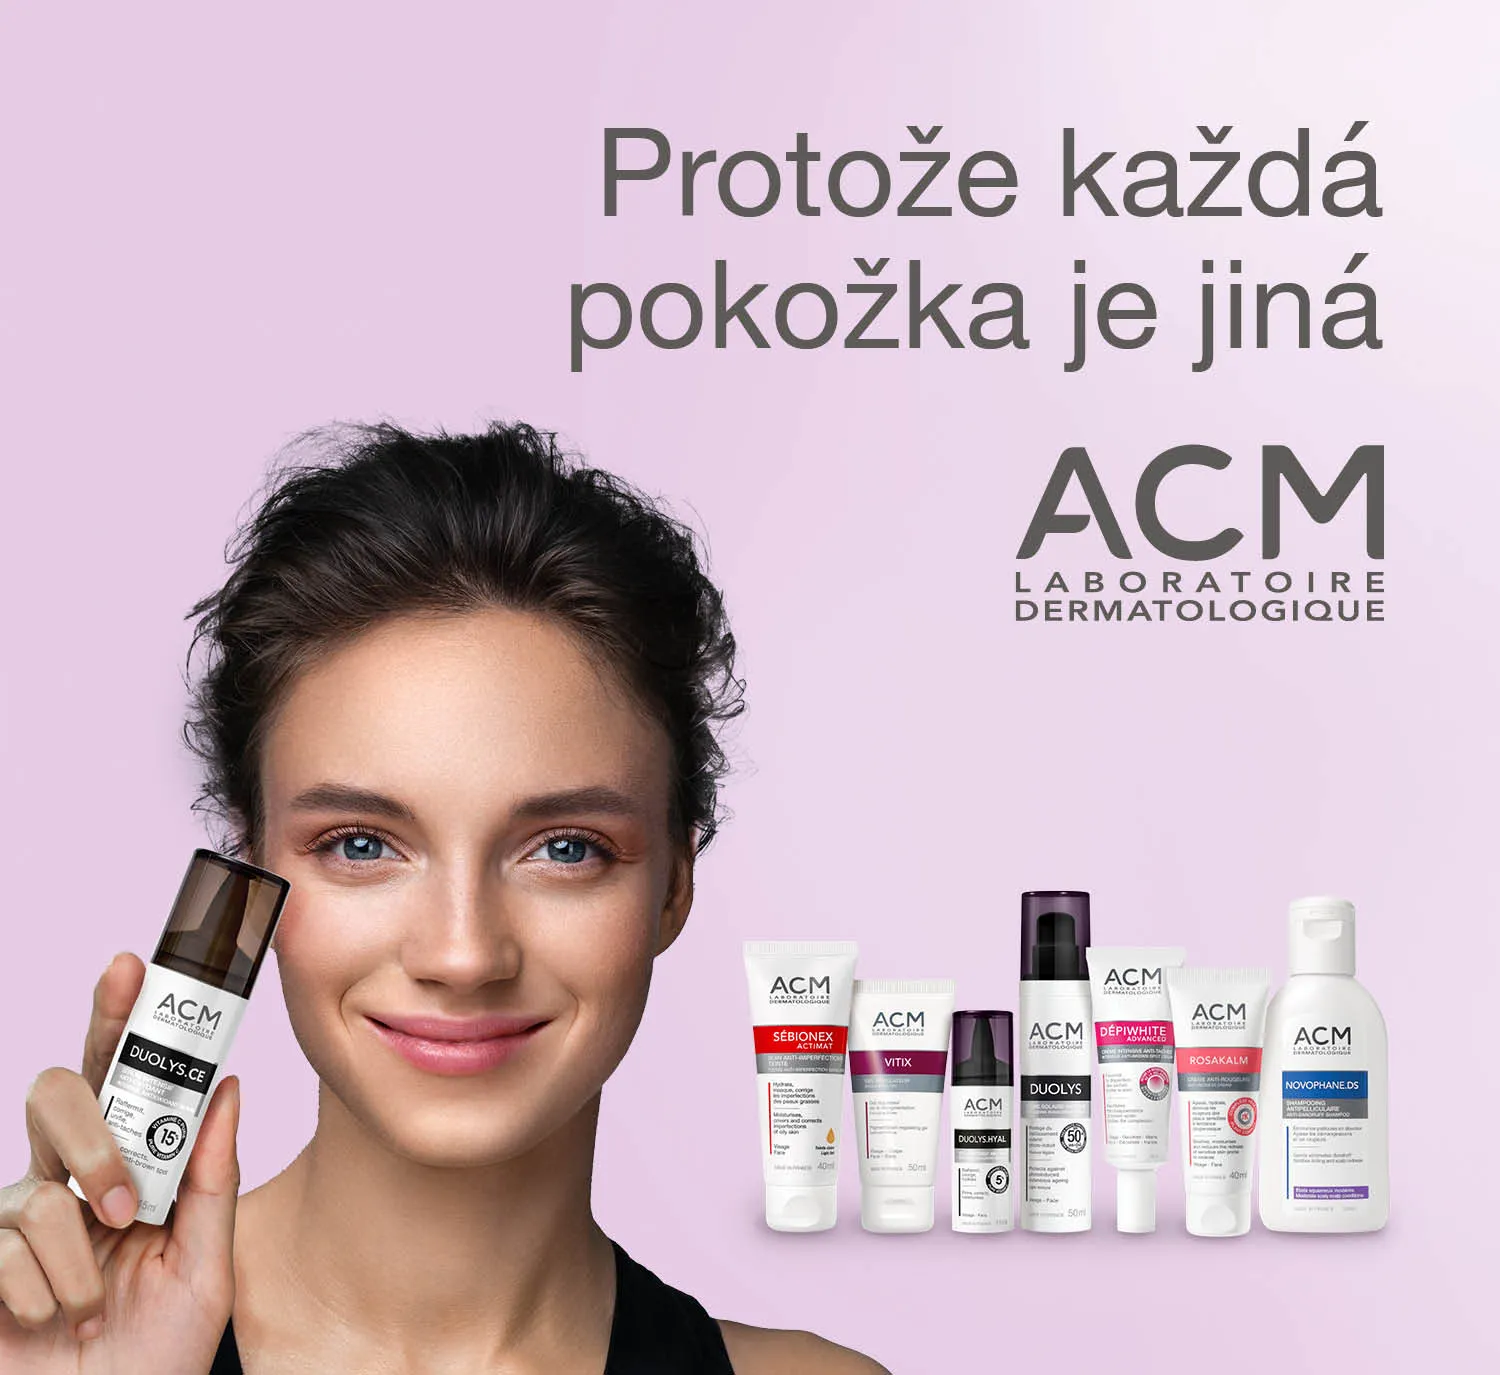 ACM laboratorie dermatologique. Protože každá pokožka je jiná.